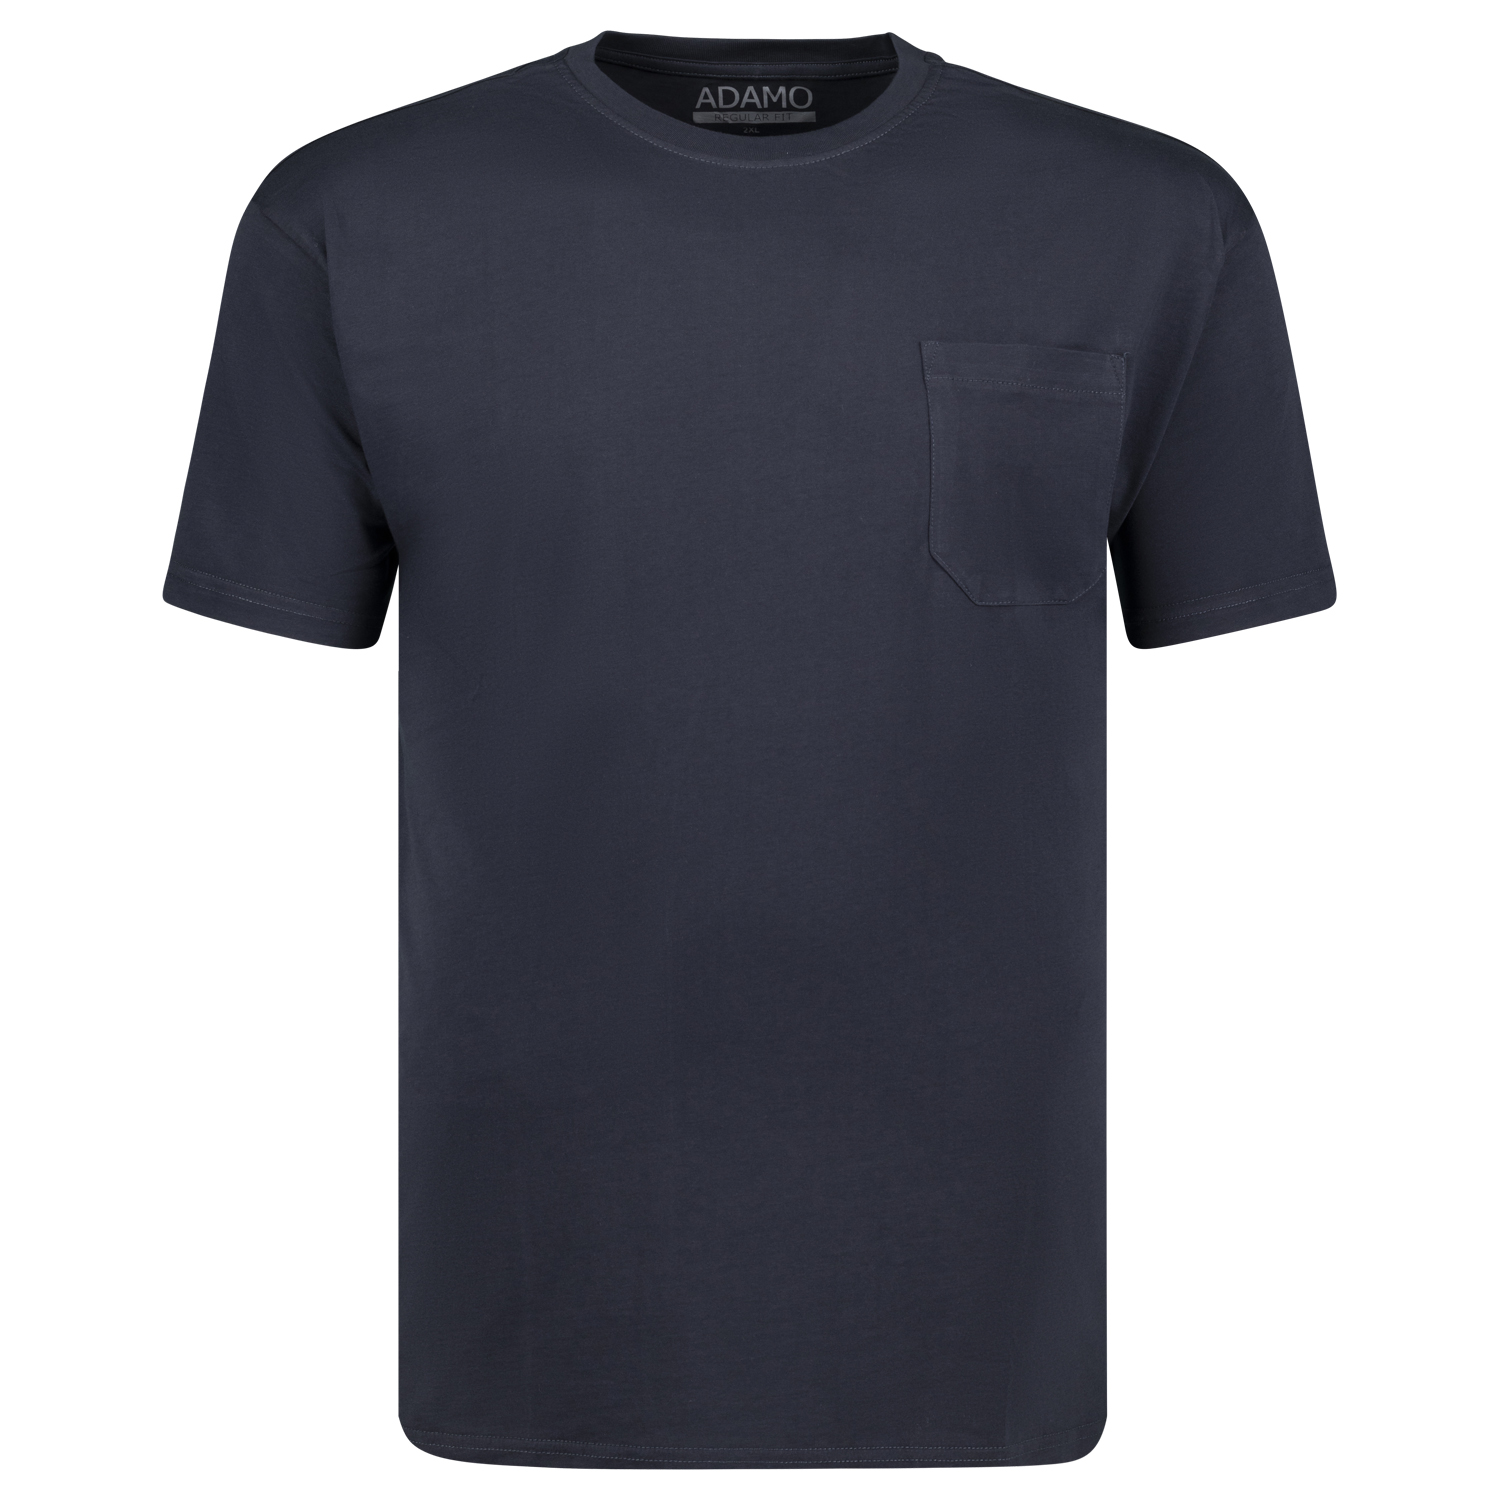 T-shirts série KODY by ADAMO jusqu'à la grande taille 10XL - couleur: bleu marine